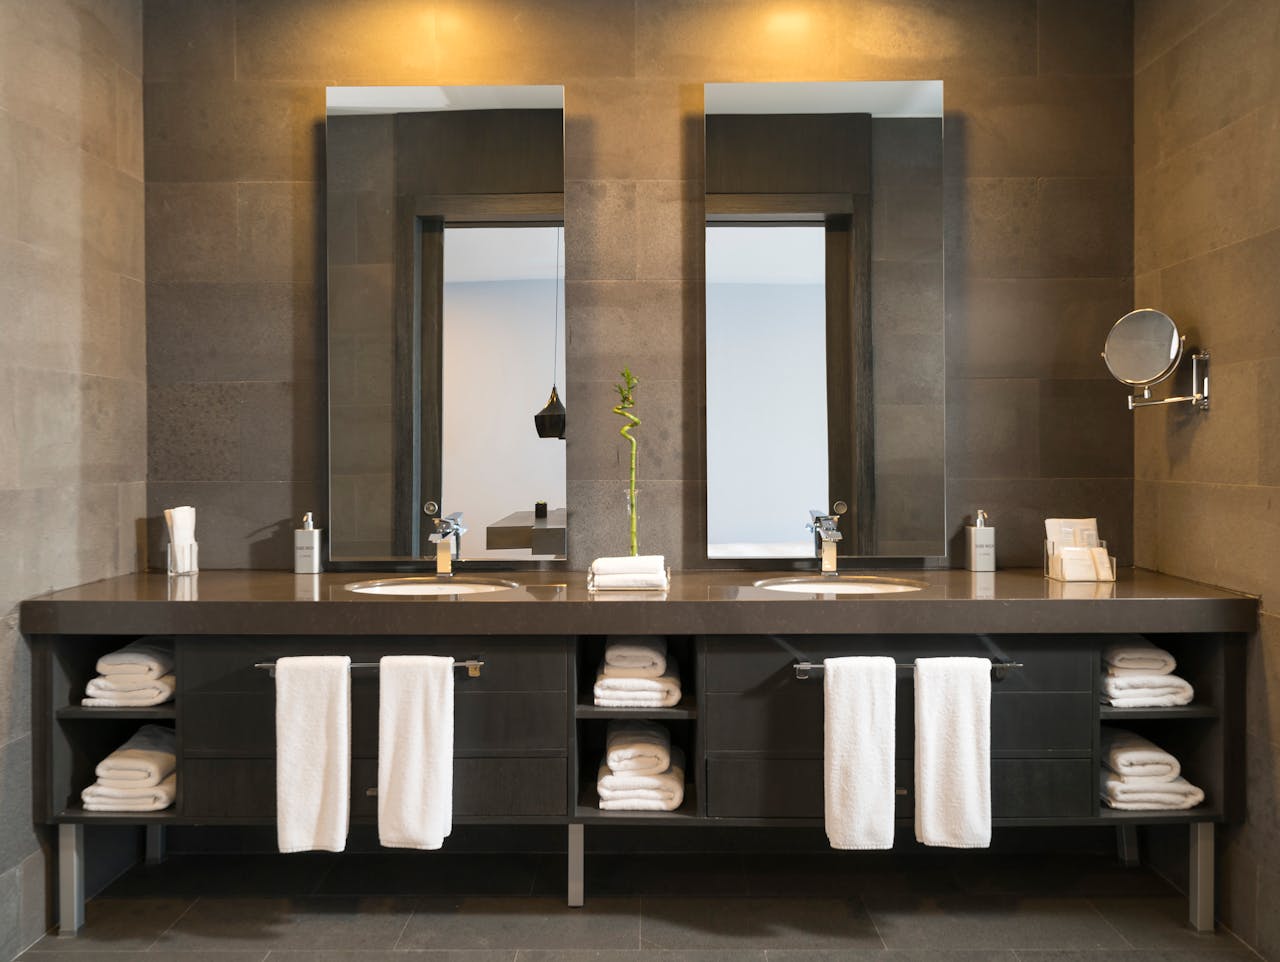 Auf diesem Bild ist ein modernes Badezimmer abgebildet, das mit elegantem Design, hochwertigen Materialien und einer luxuriösen Ausstattung eine entspannte Atmosphäre für Wellness und Erholung schafft